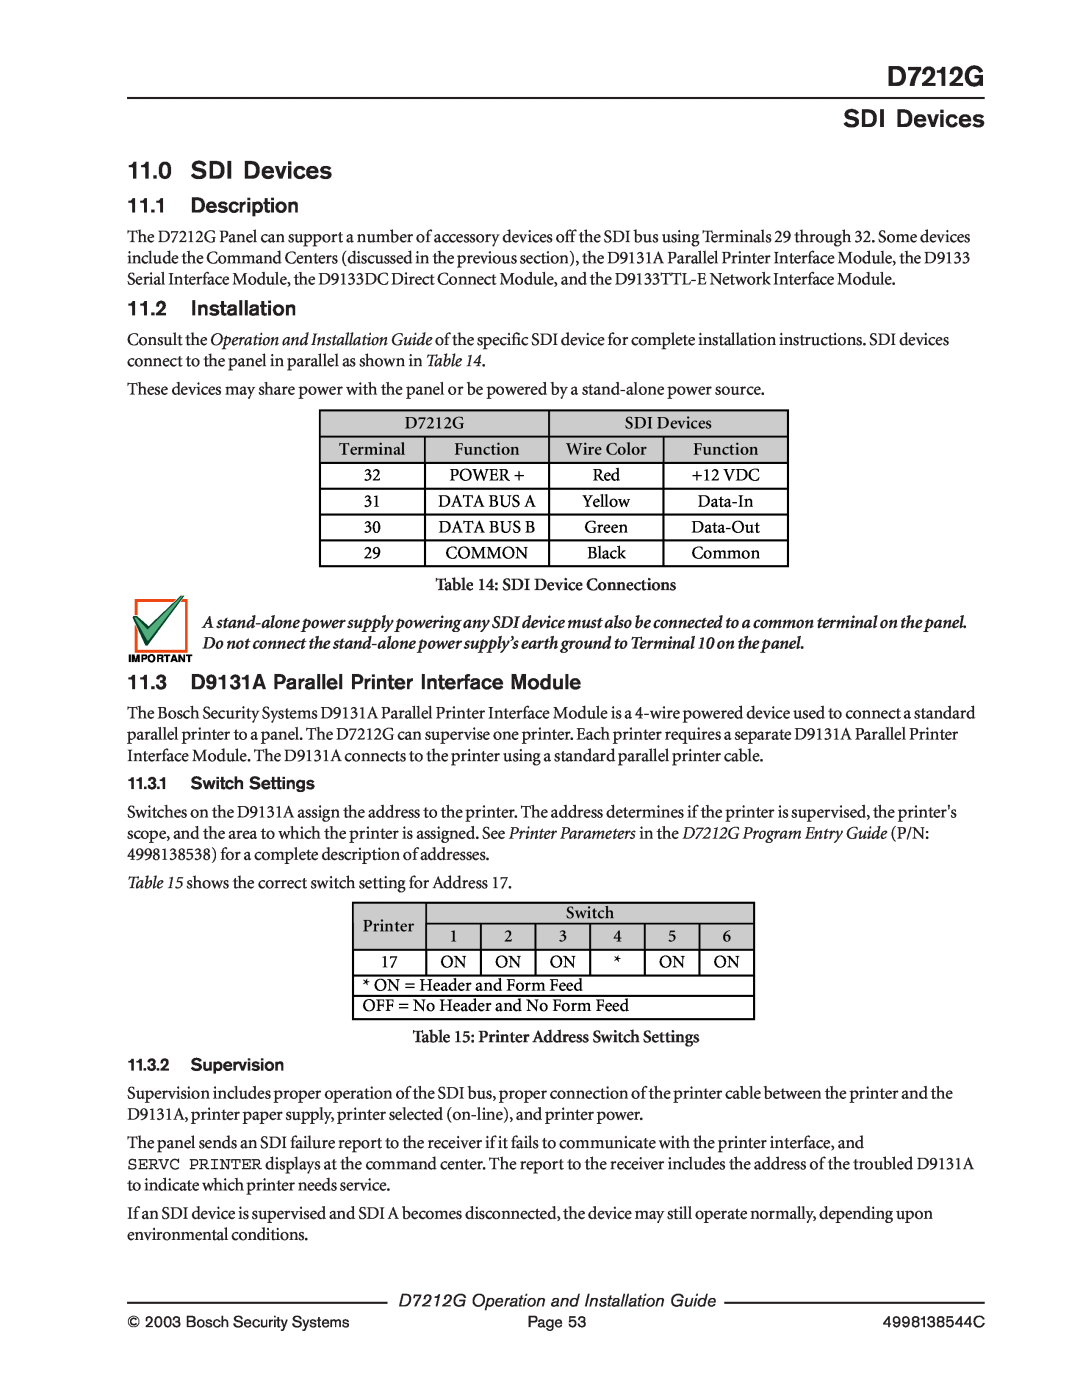 Bosch Appliances D7212G manual SDI Devices 11.0SDI Devices, 11.1Description, 11.2Installation, Printer, Function 